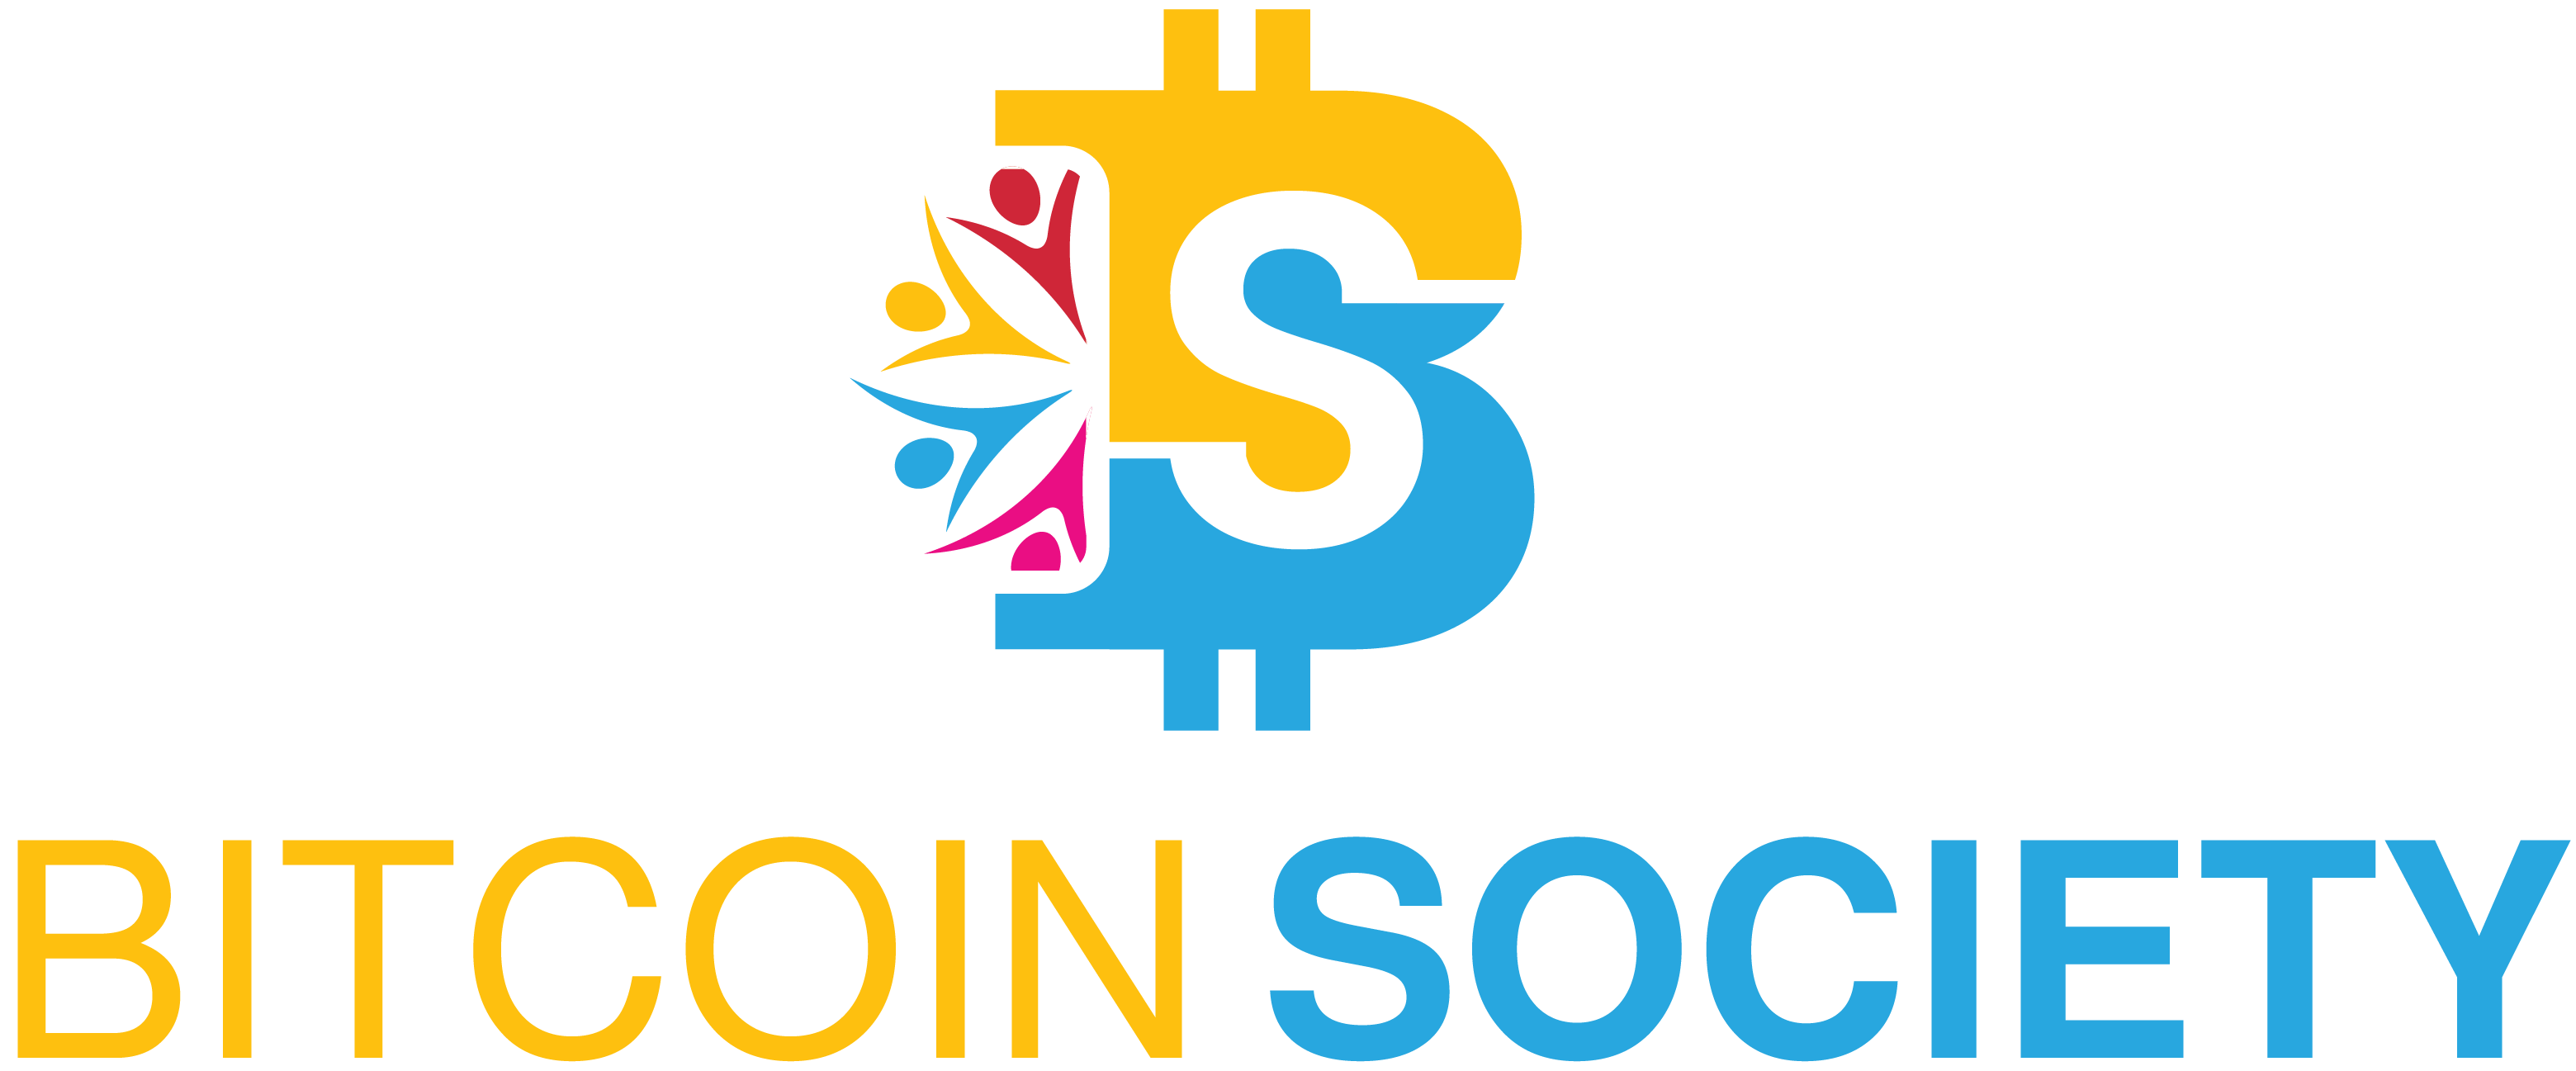 Bitcoin Society - Póngase en contacto con nosotros